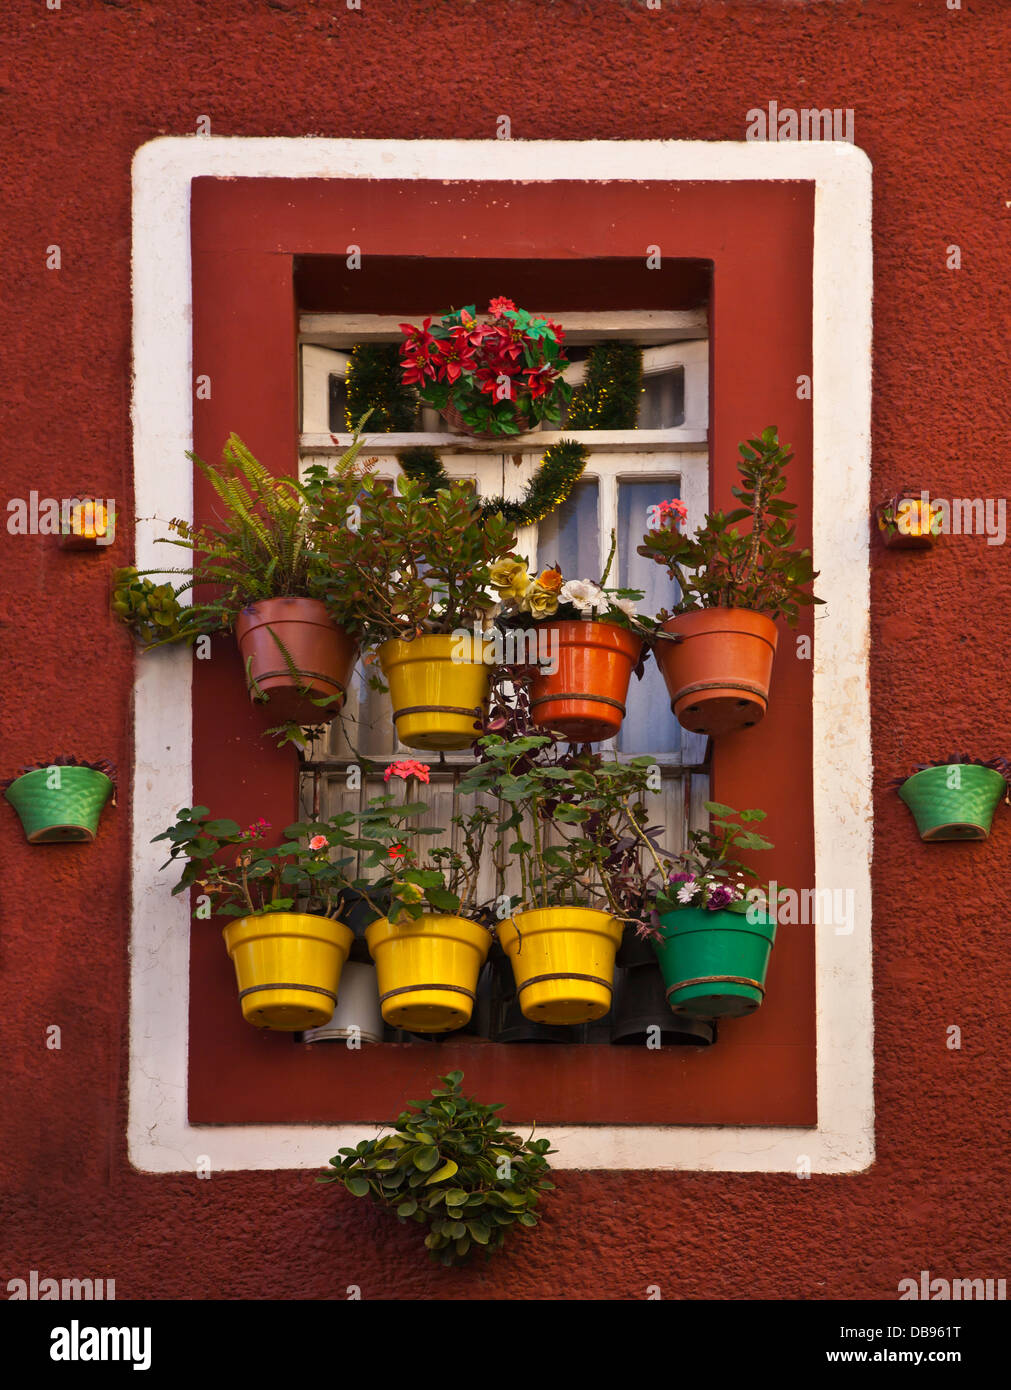 Plantes en pot suspendu à une fenêtre - Guanajuato, Mexique Banque D'Images